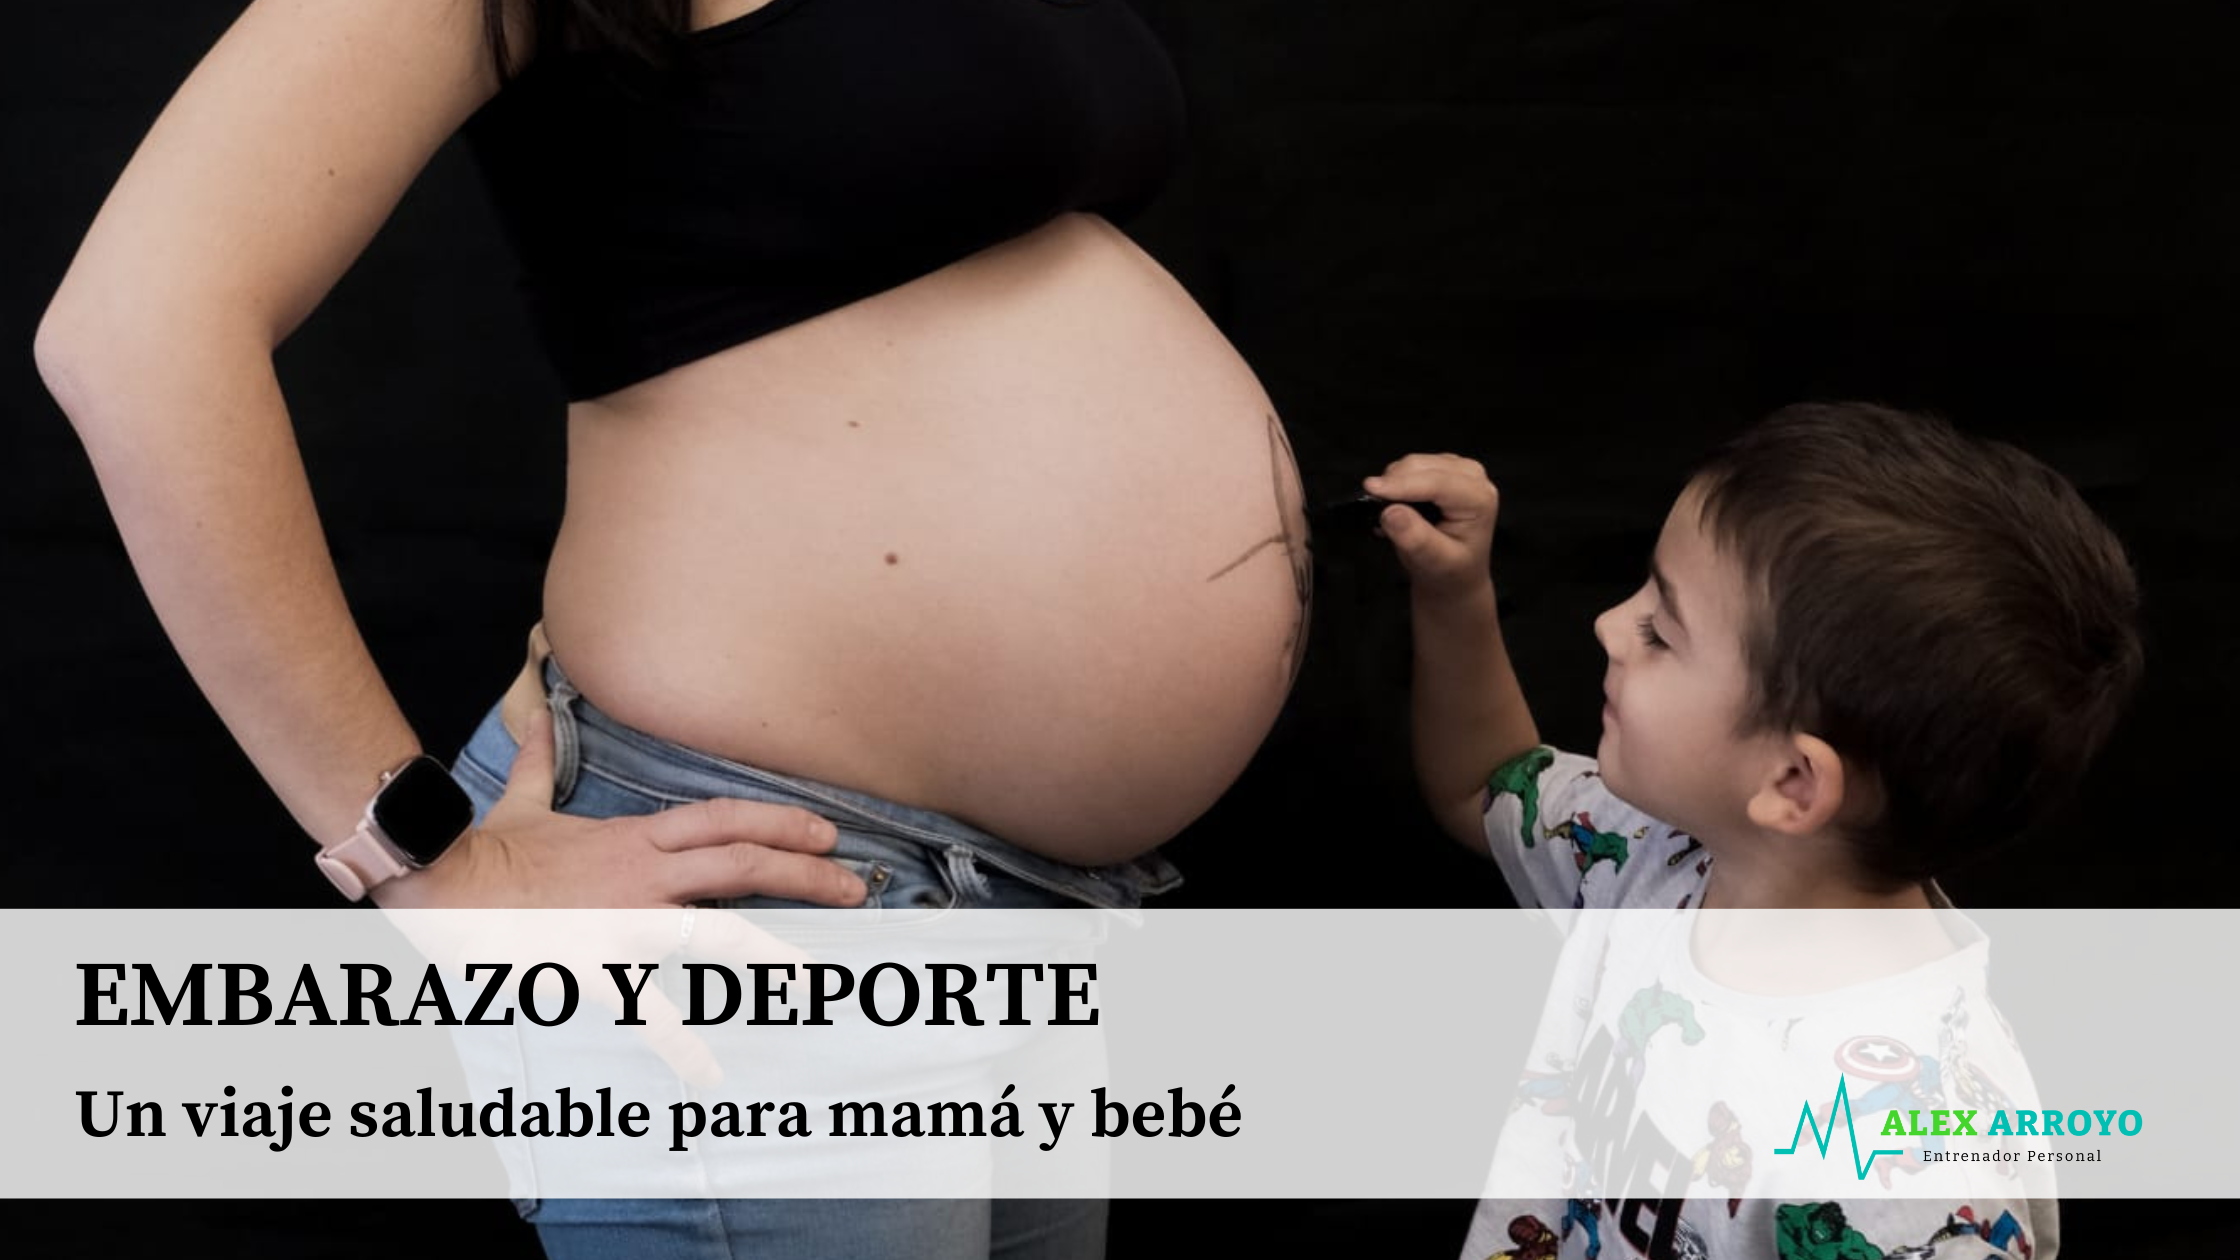 Embarazo y deporte: Un viaje saludable para mamá y bebé. Vamos hablar de los beneficios que conlleva el deporte cuando estás embarazada.